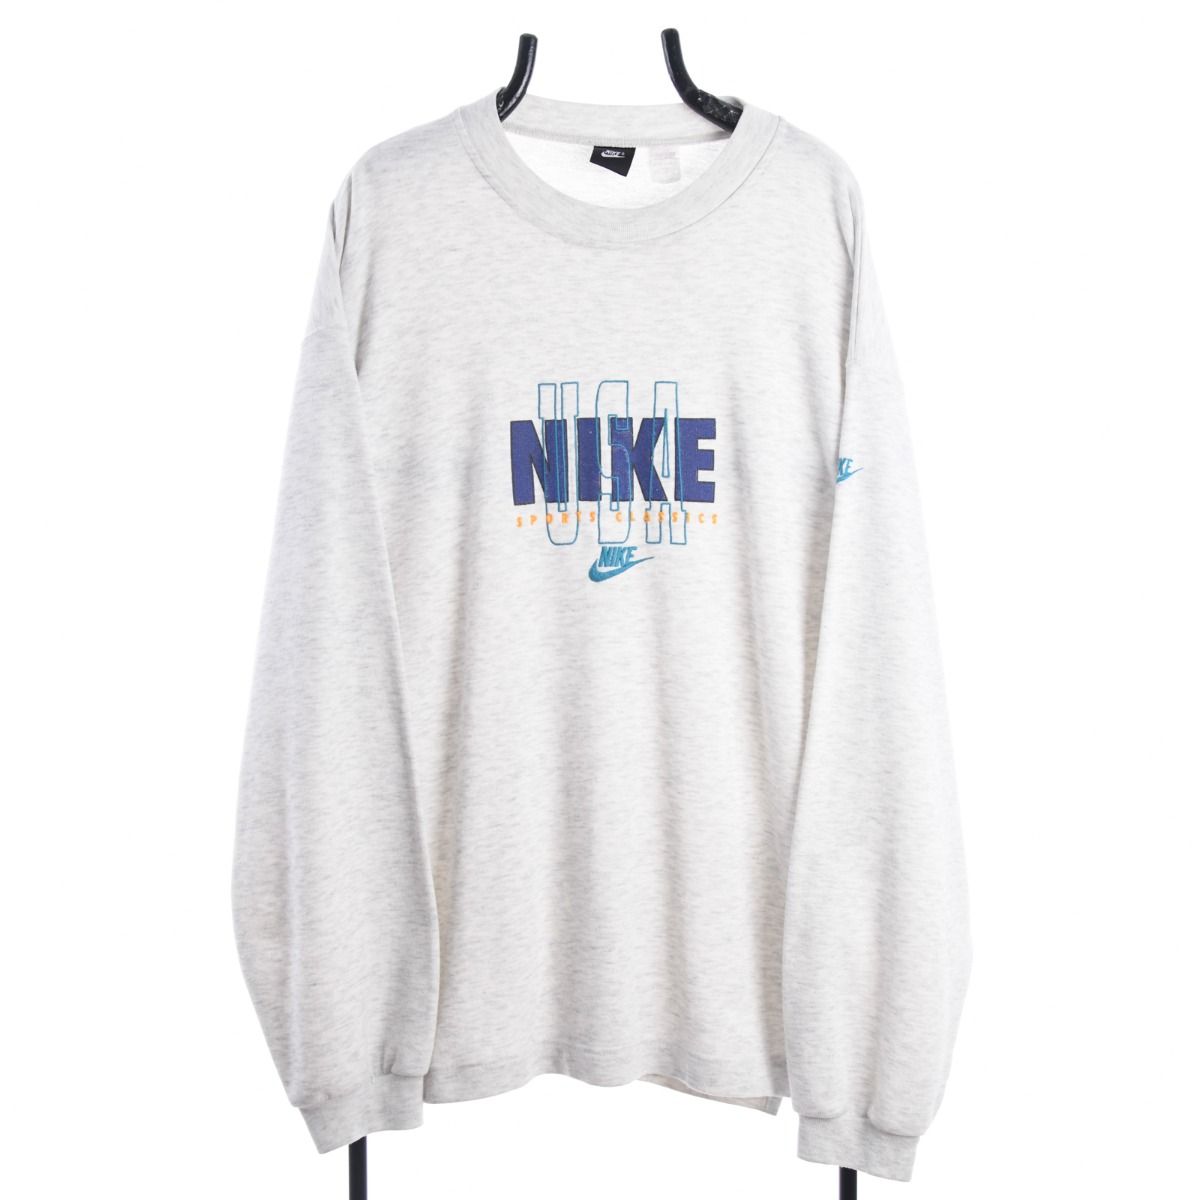 Nike Late 1980s Sweatshirt 